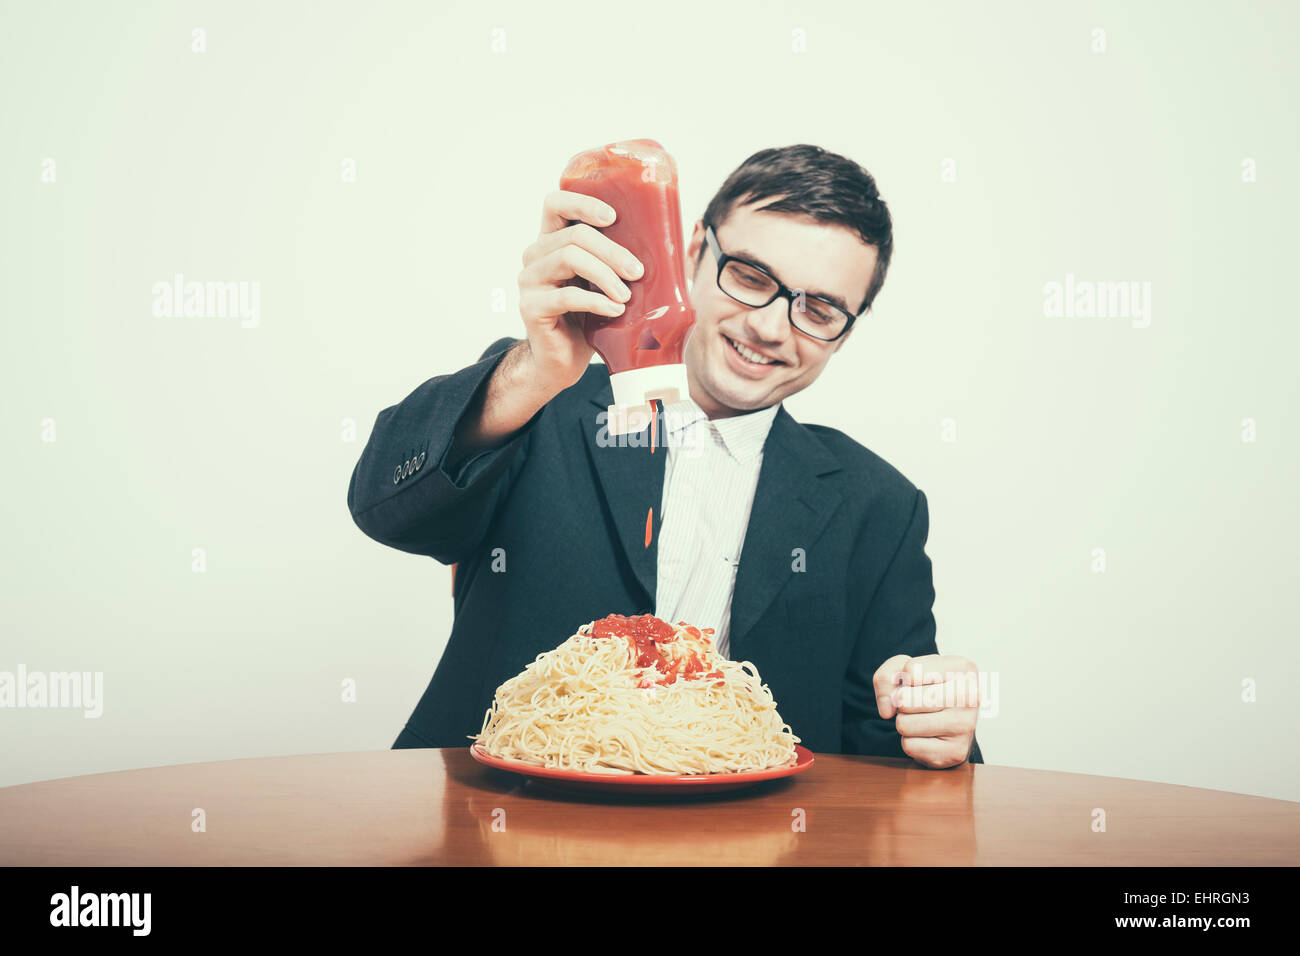 Glücklich Konsum Konzept. Glücklich Kaufmann Ketchup auf große Teller Nudeln gießen. Stockfoto